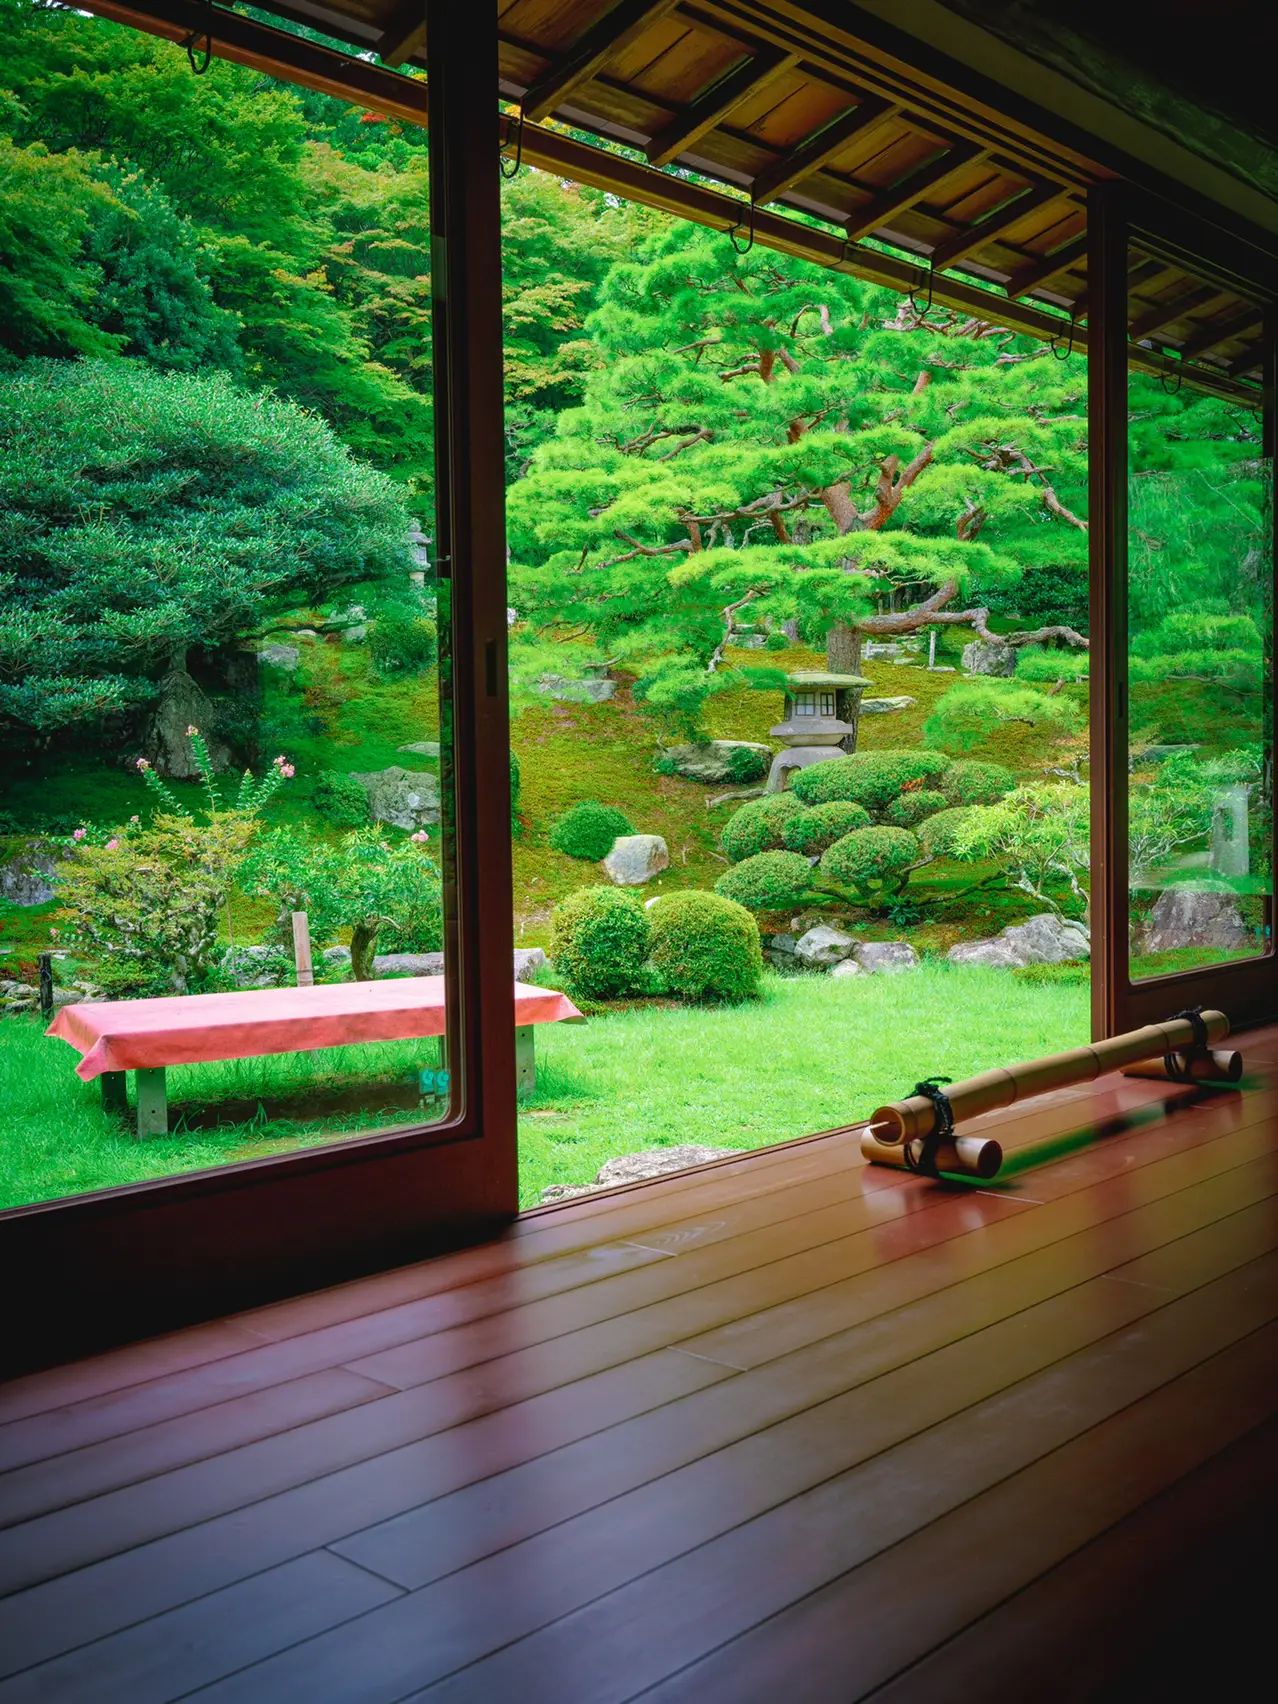 【死ぬまでに絶対行きたい日本の絶景】旧竹林院@滋賀の画像 (3枚目)